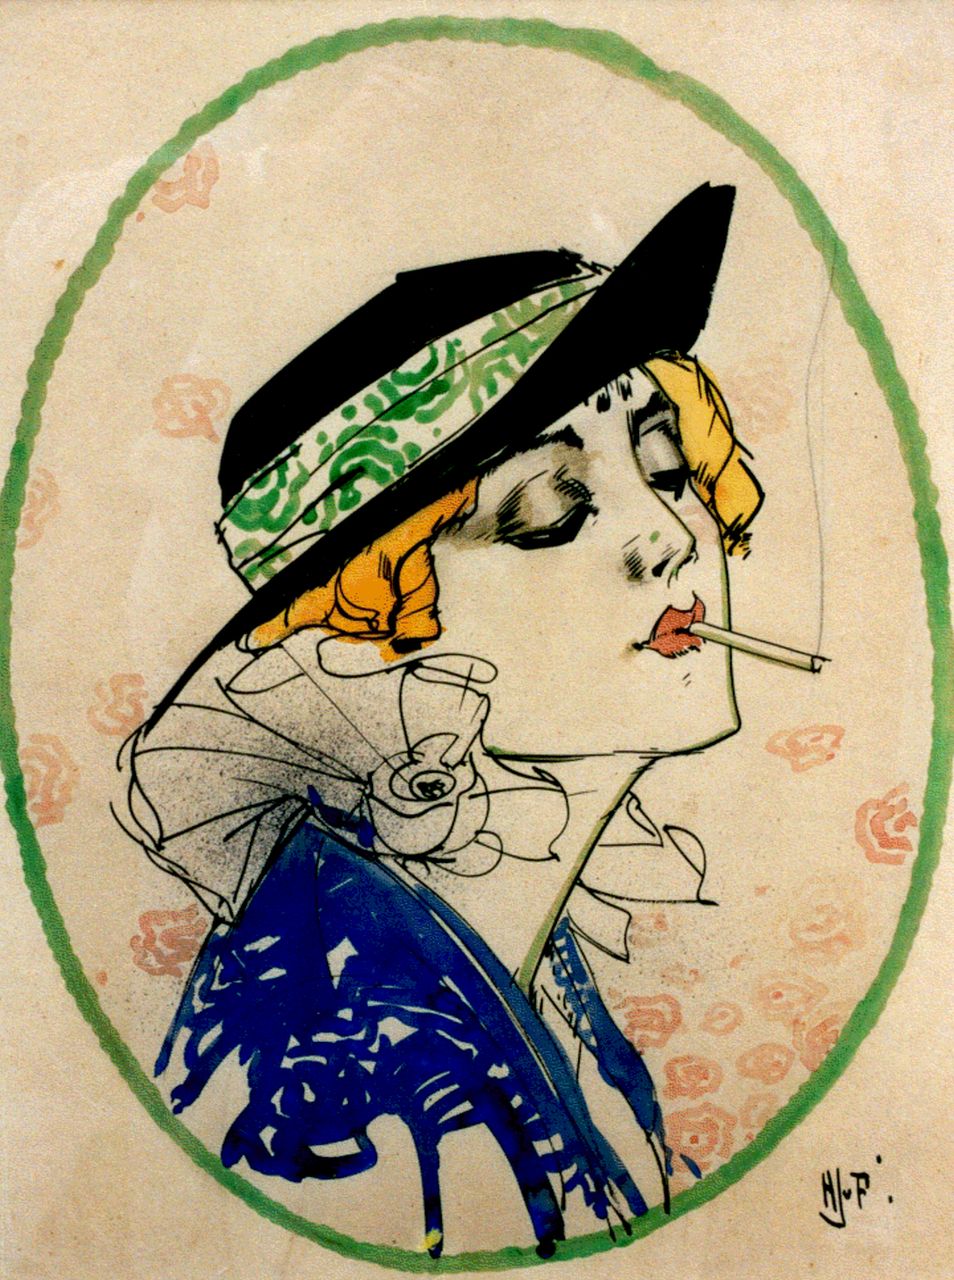 Piggelen H.J. van | H.J. van Piggelen, A lady with a cigarette, watercolour on paper 51.0 x 39.0 cm, signed l.r. with initials